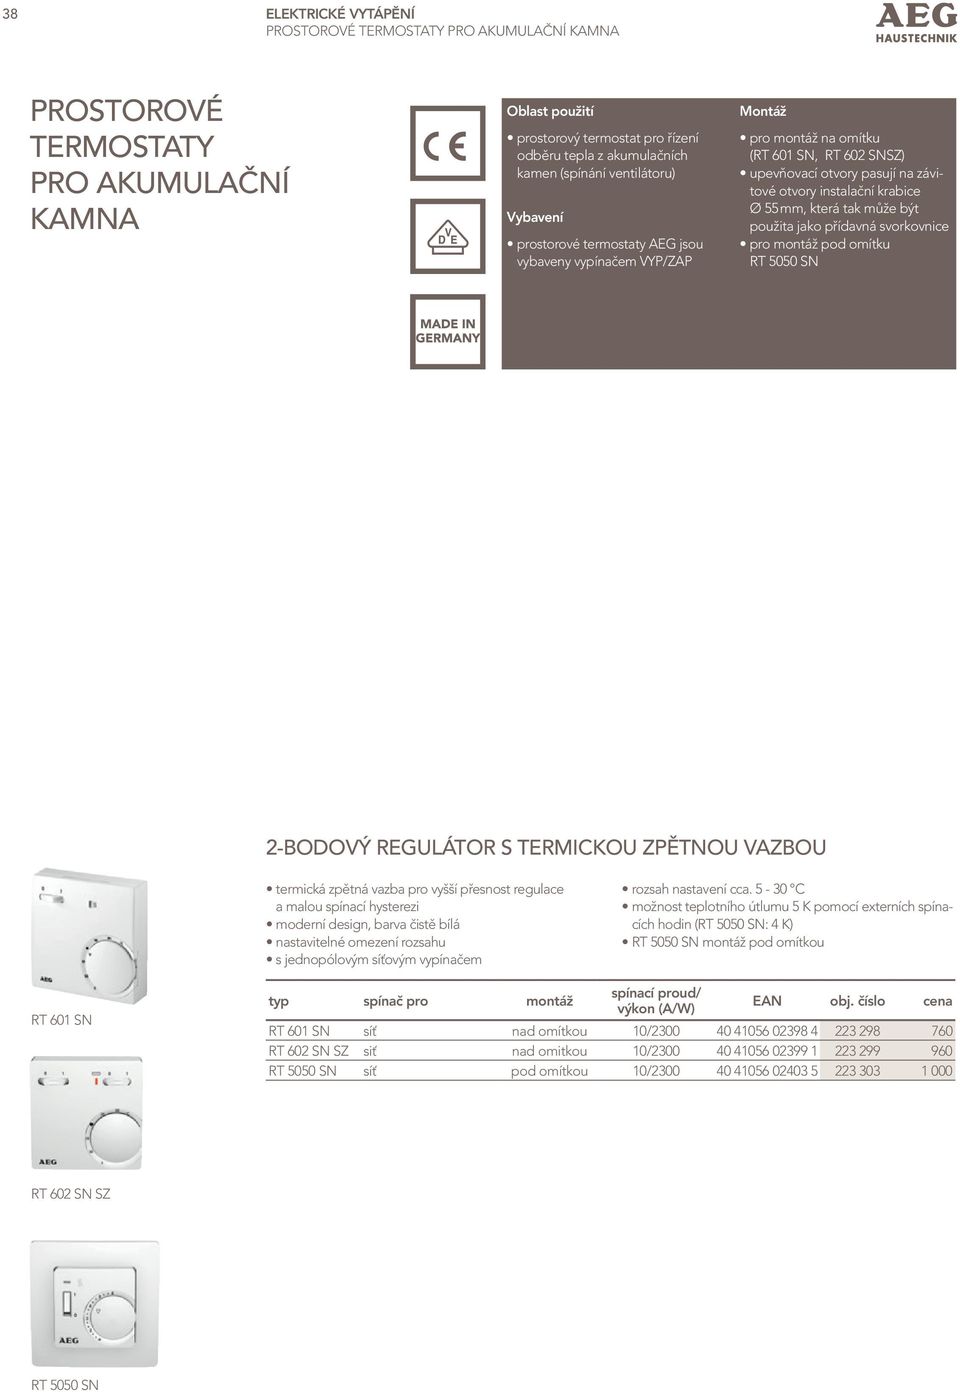 krabice Ø 55 mm, která tak může být použita jako přídavná svorkovnice pro montáž pod omítku RT 5050 SN 2-bodový regulátor S TerMIckoU ZPĚTnoU vazbou termická zpětná vazba pro vyšší přesnost regulace